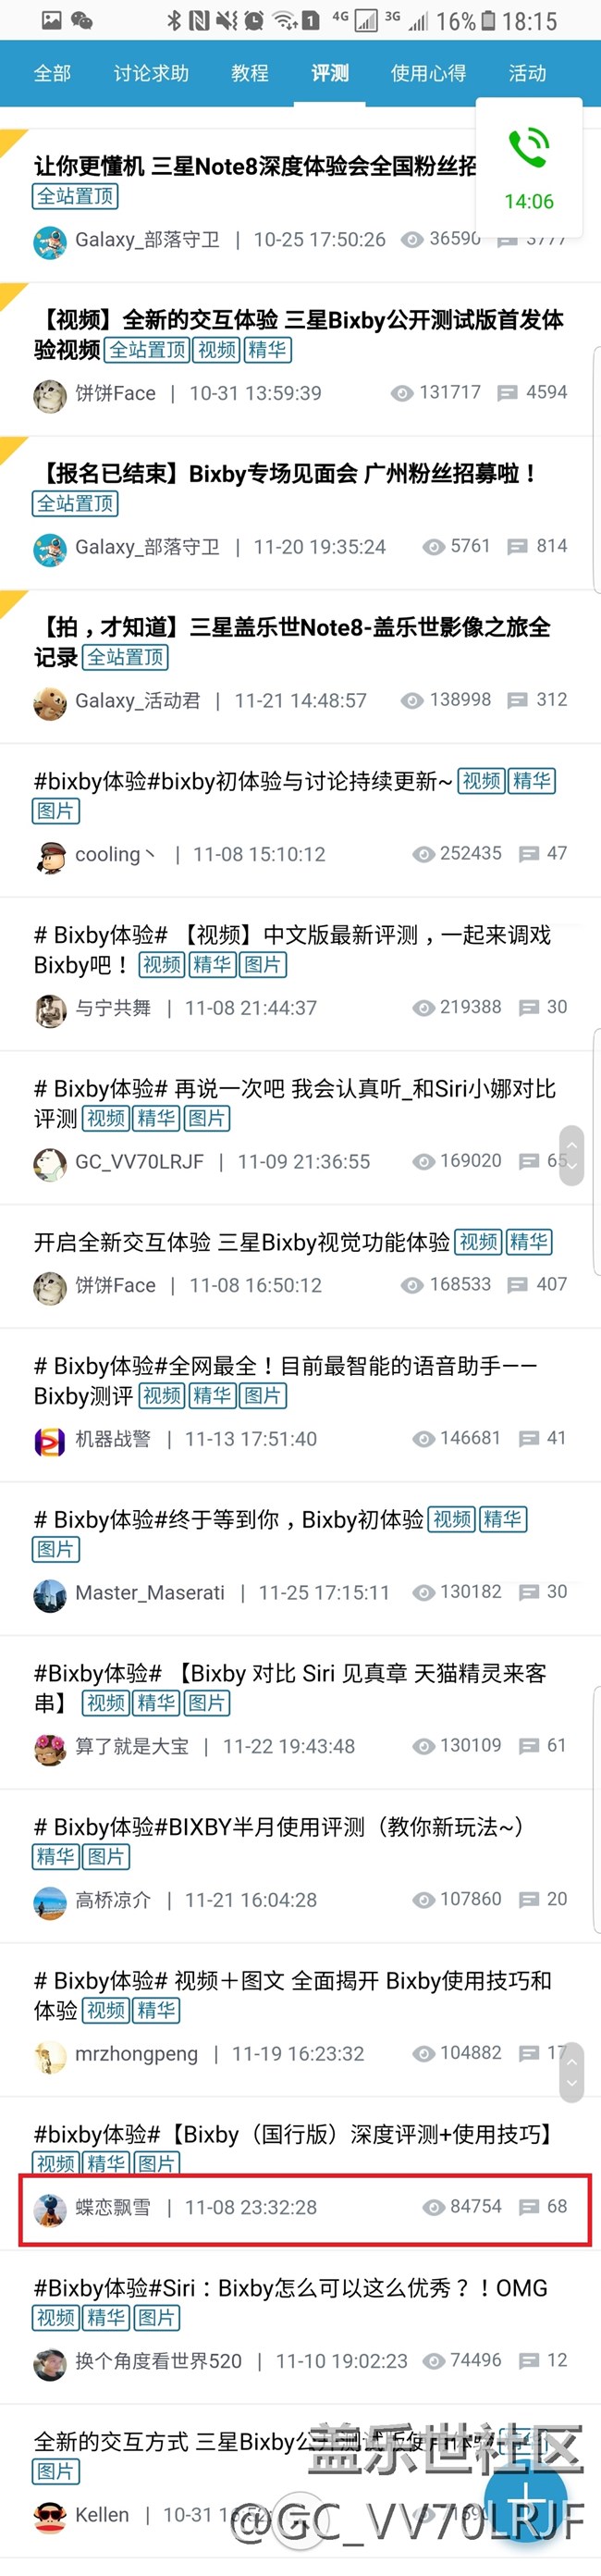 关于这次Bixby内测活动*的一些证据